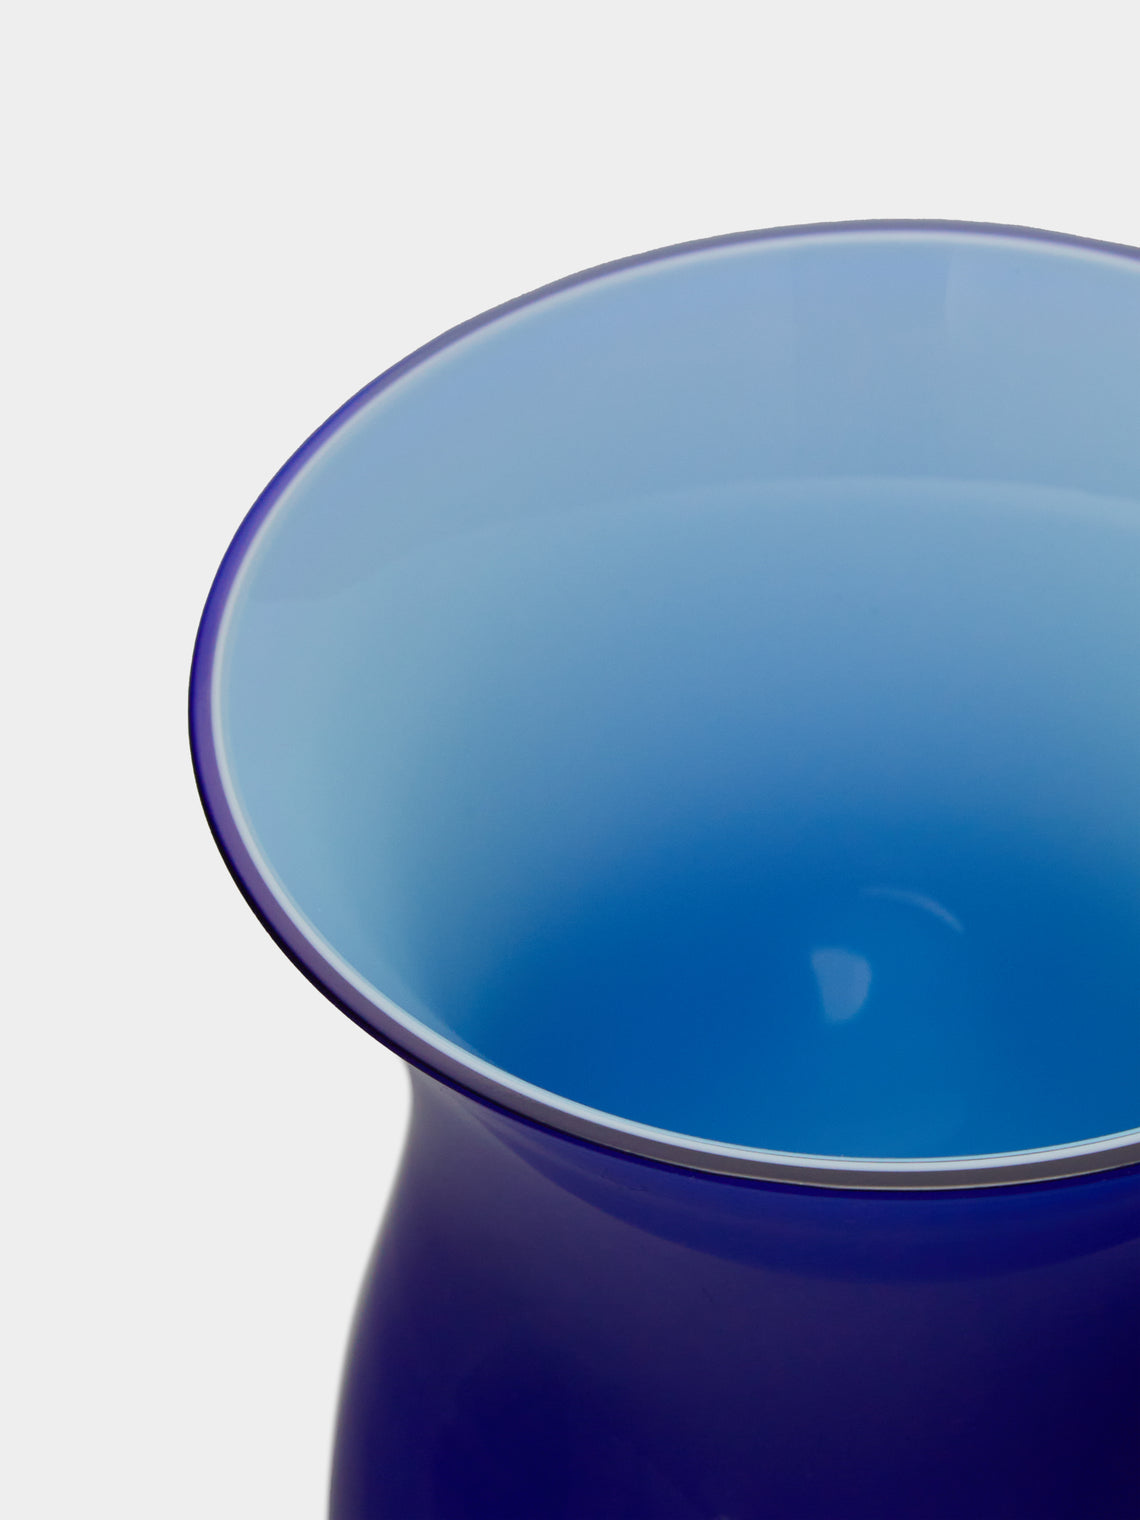 NasonMoretti - Antares Hand-Blown Murano Glass Bud Vase - ABASK